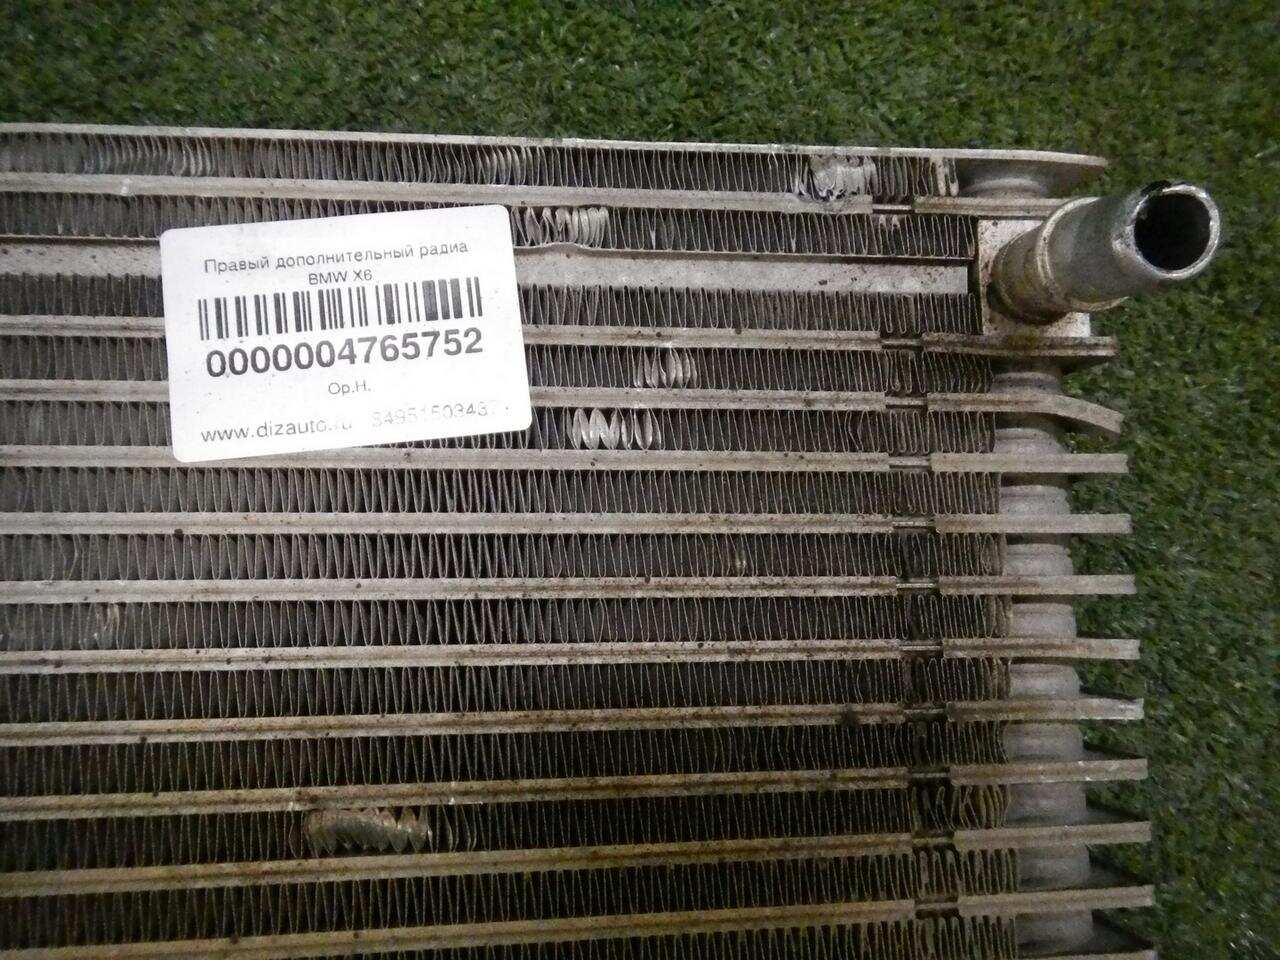 Радиатор масляный вынесенный BMW X5M F95 (2019-Н.В.) 17218097175 0000004765752